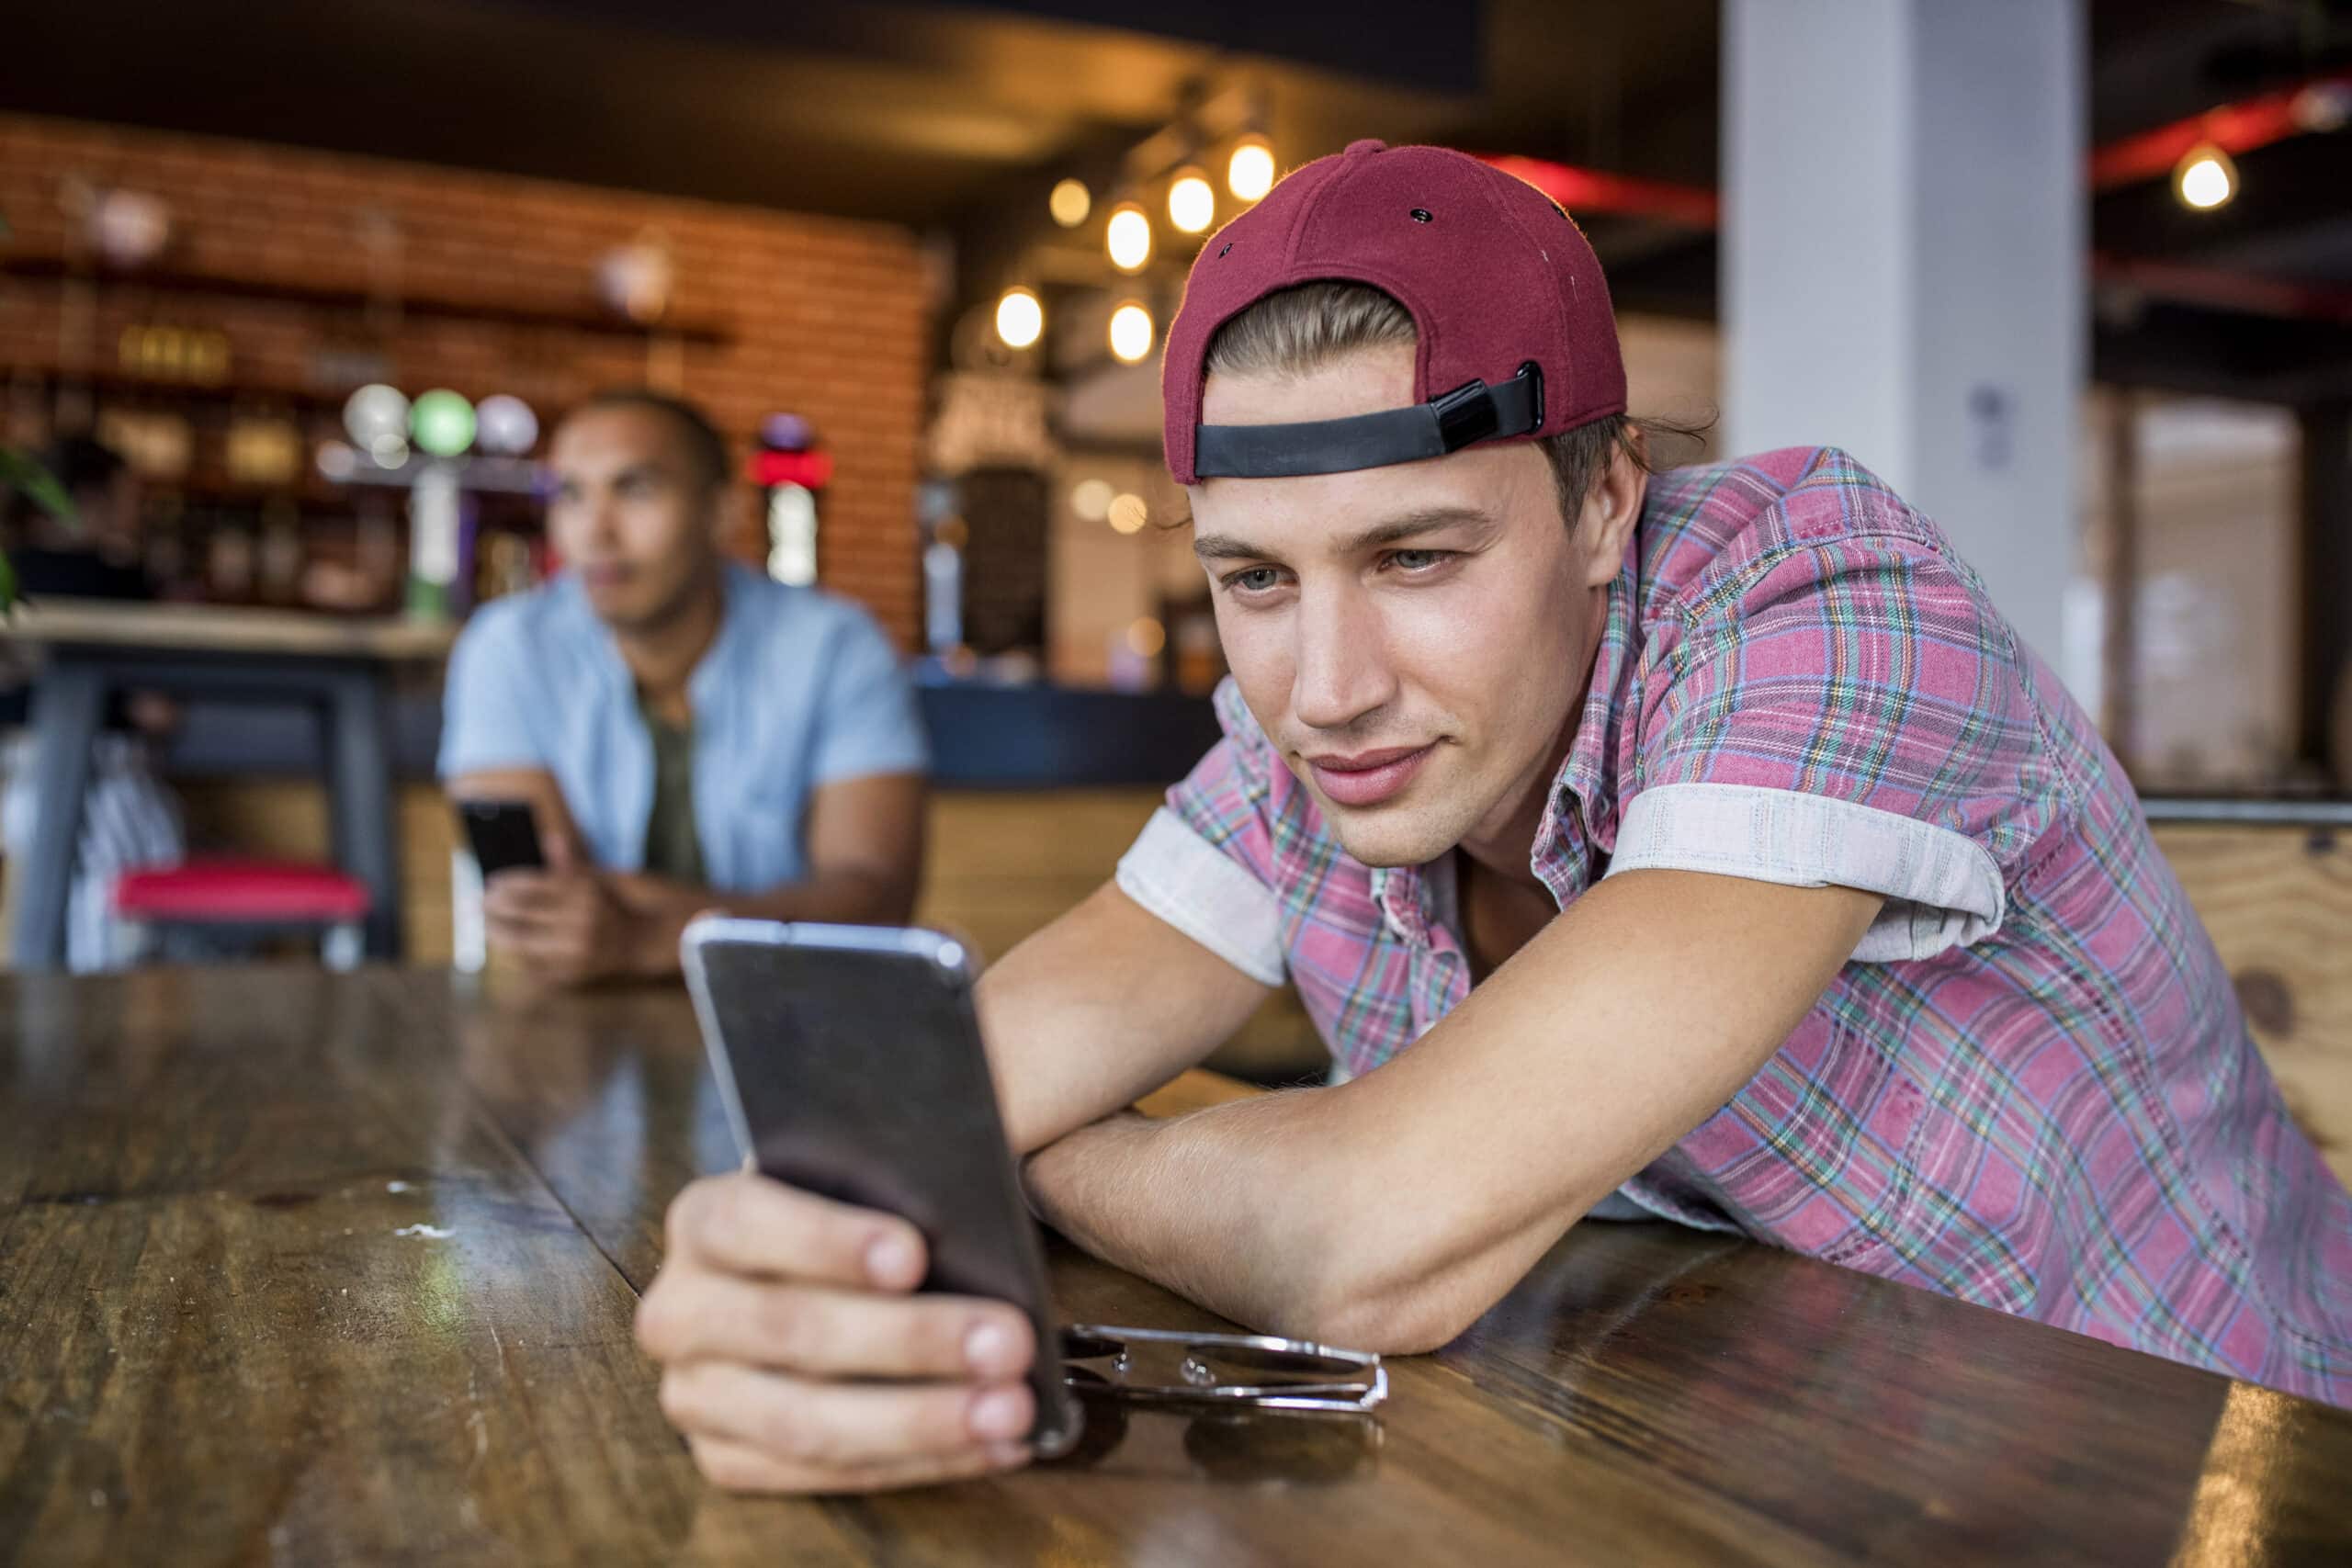 Junger Mann mit roter Mütze und kariertem Hemd benutzt sein Smartphone an einem Cafétisch, im Hintergrund ist eine andere Person unscharf zu sehen. © Fotografie Tomas Rodriguez